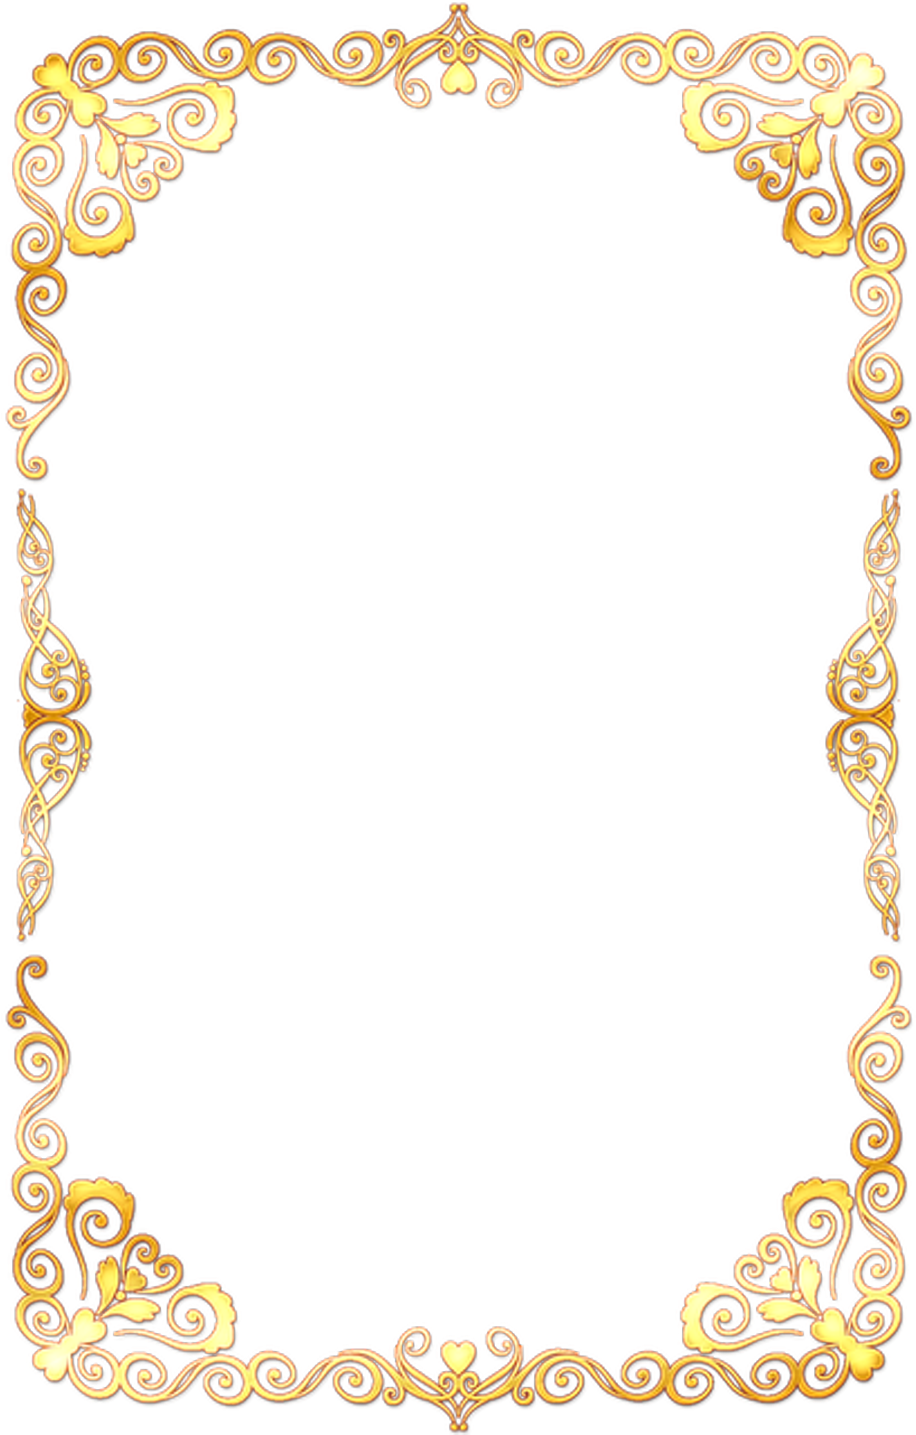 #adornment #adorno #moldura #quadro #borda #gold #golden - Transparent Background Gold Border (1024x1434), Png Download